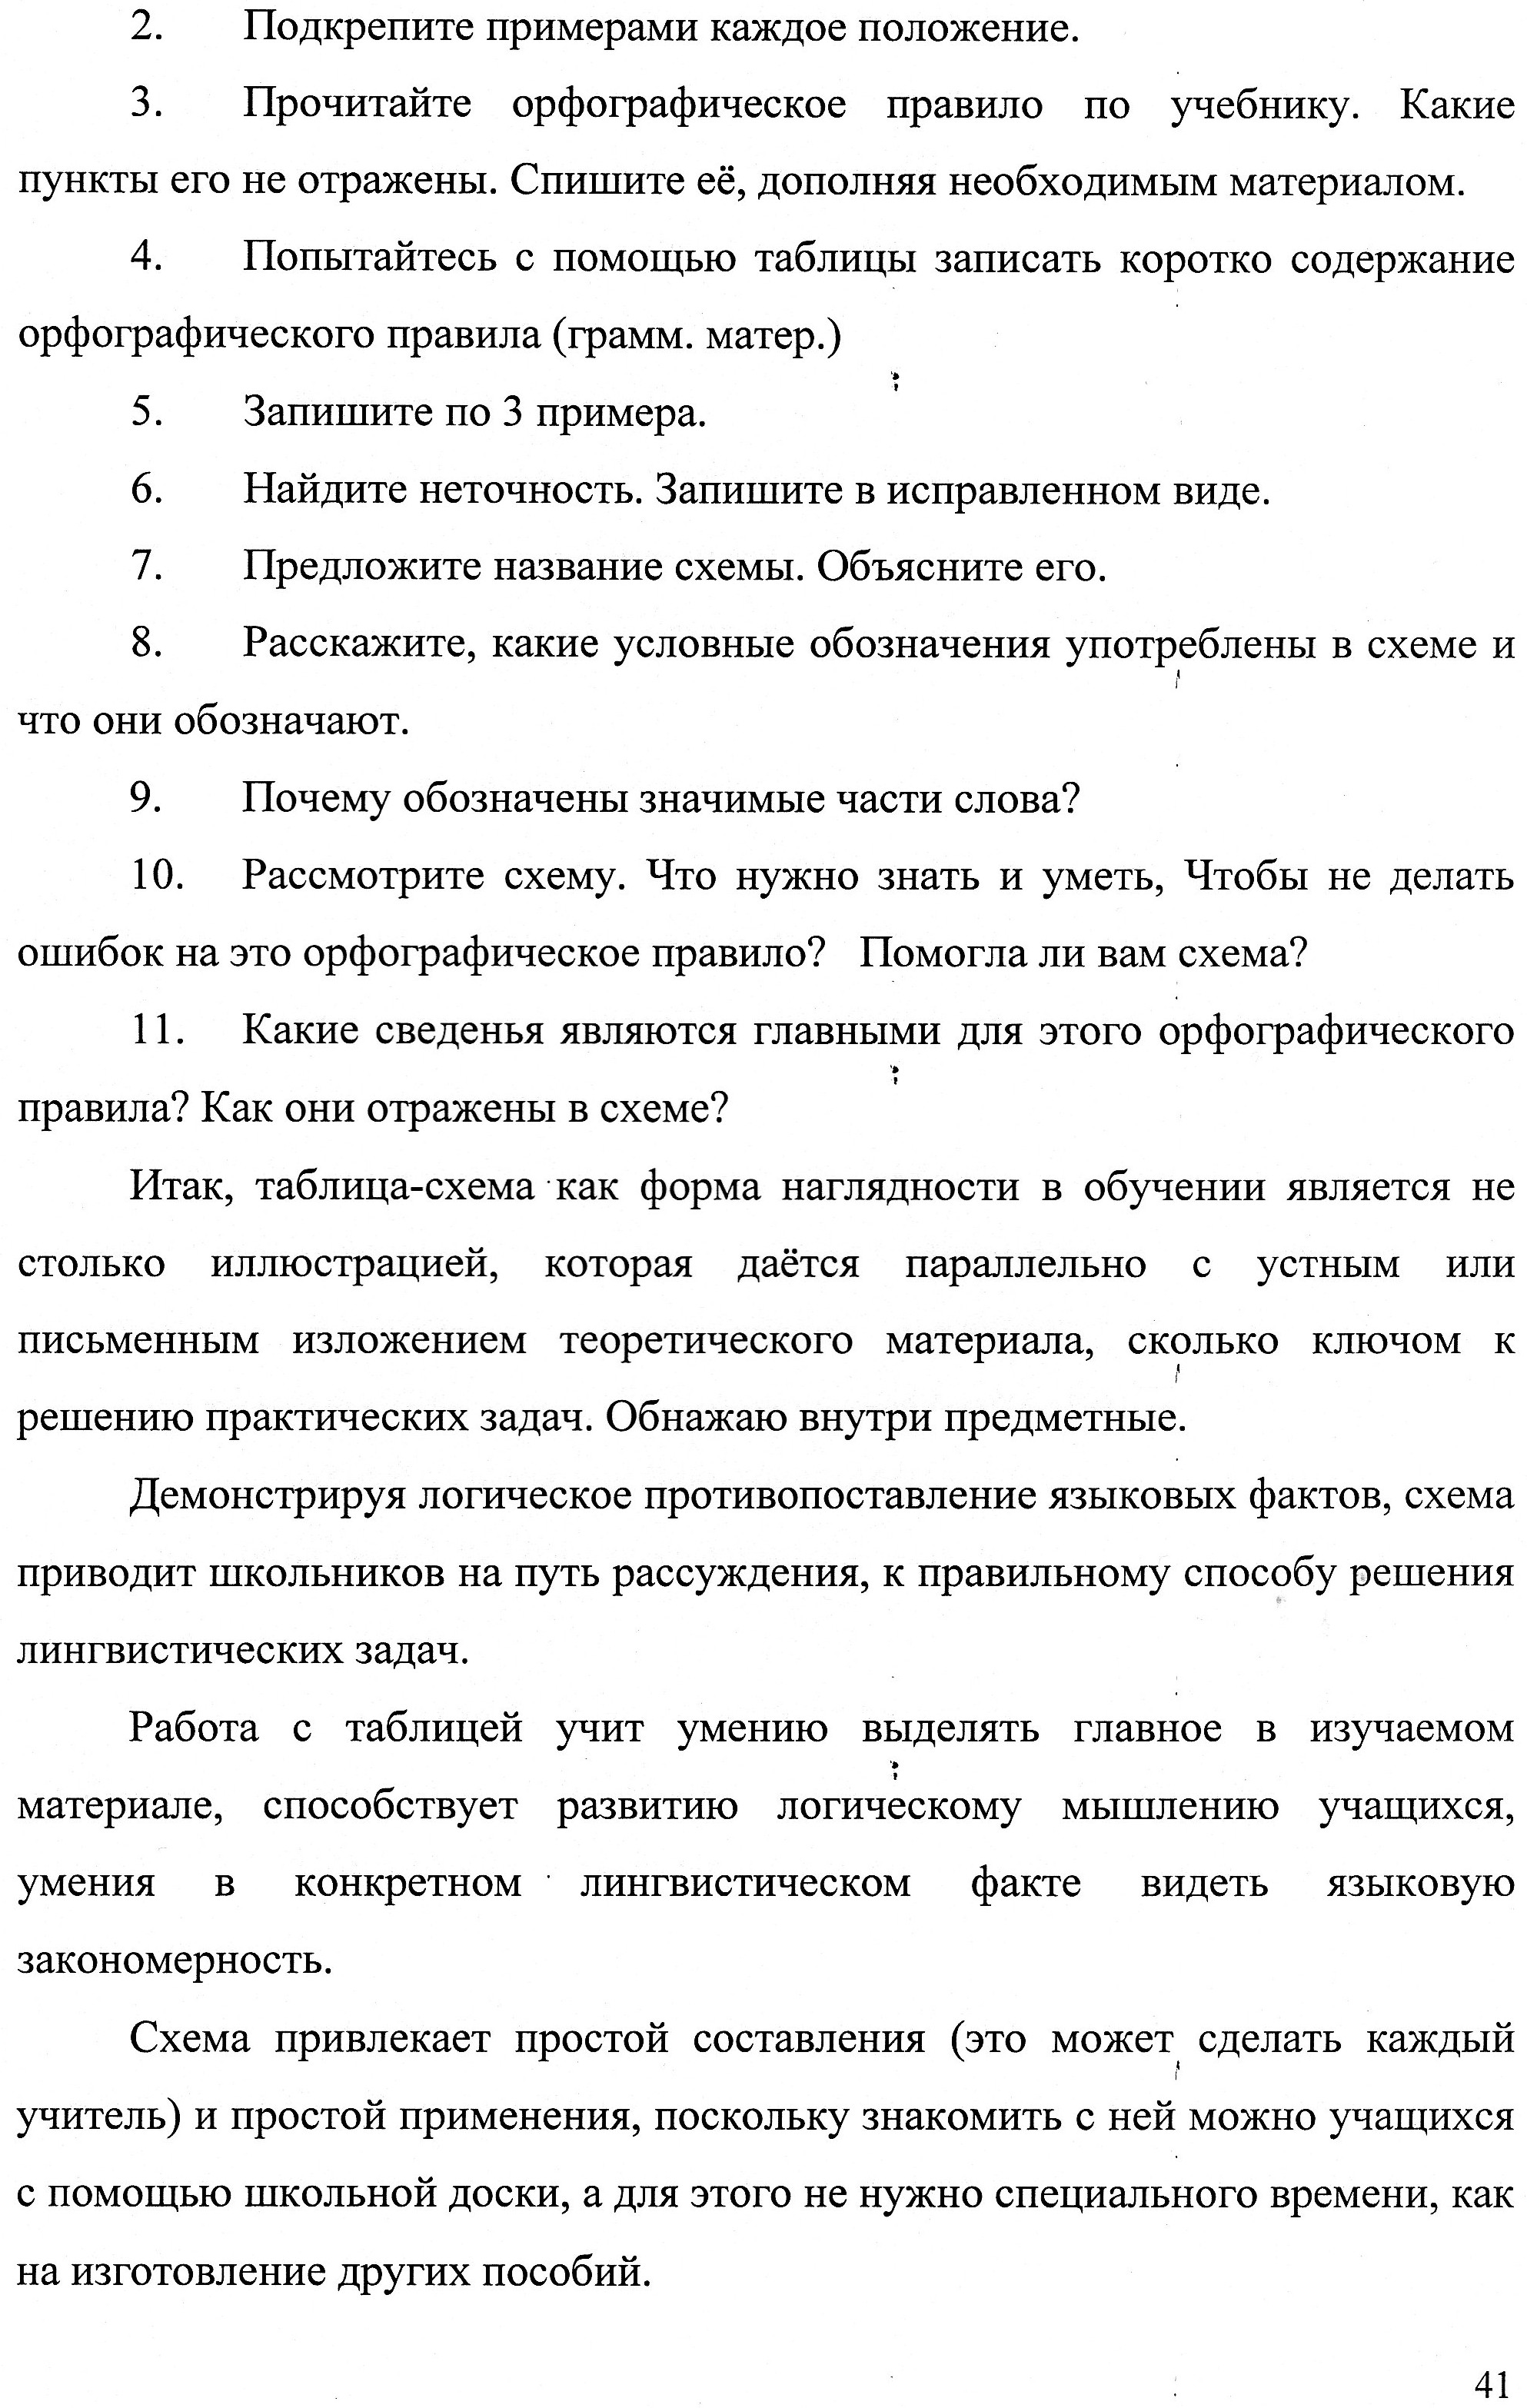 Использование таблиц на уроках русского языка